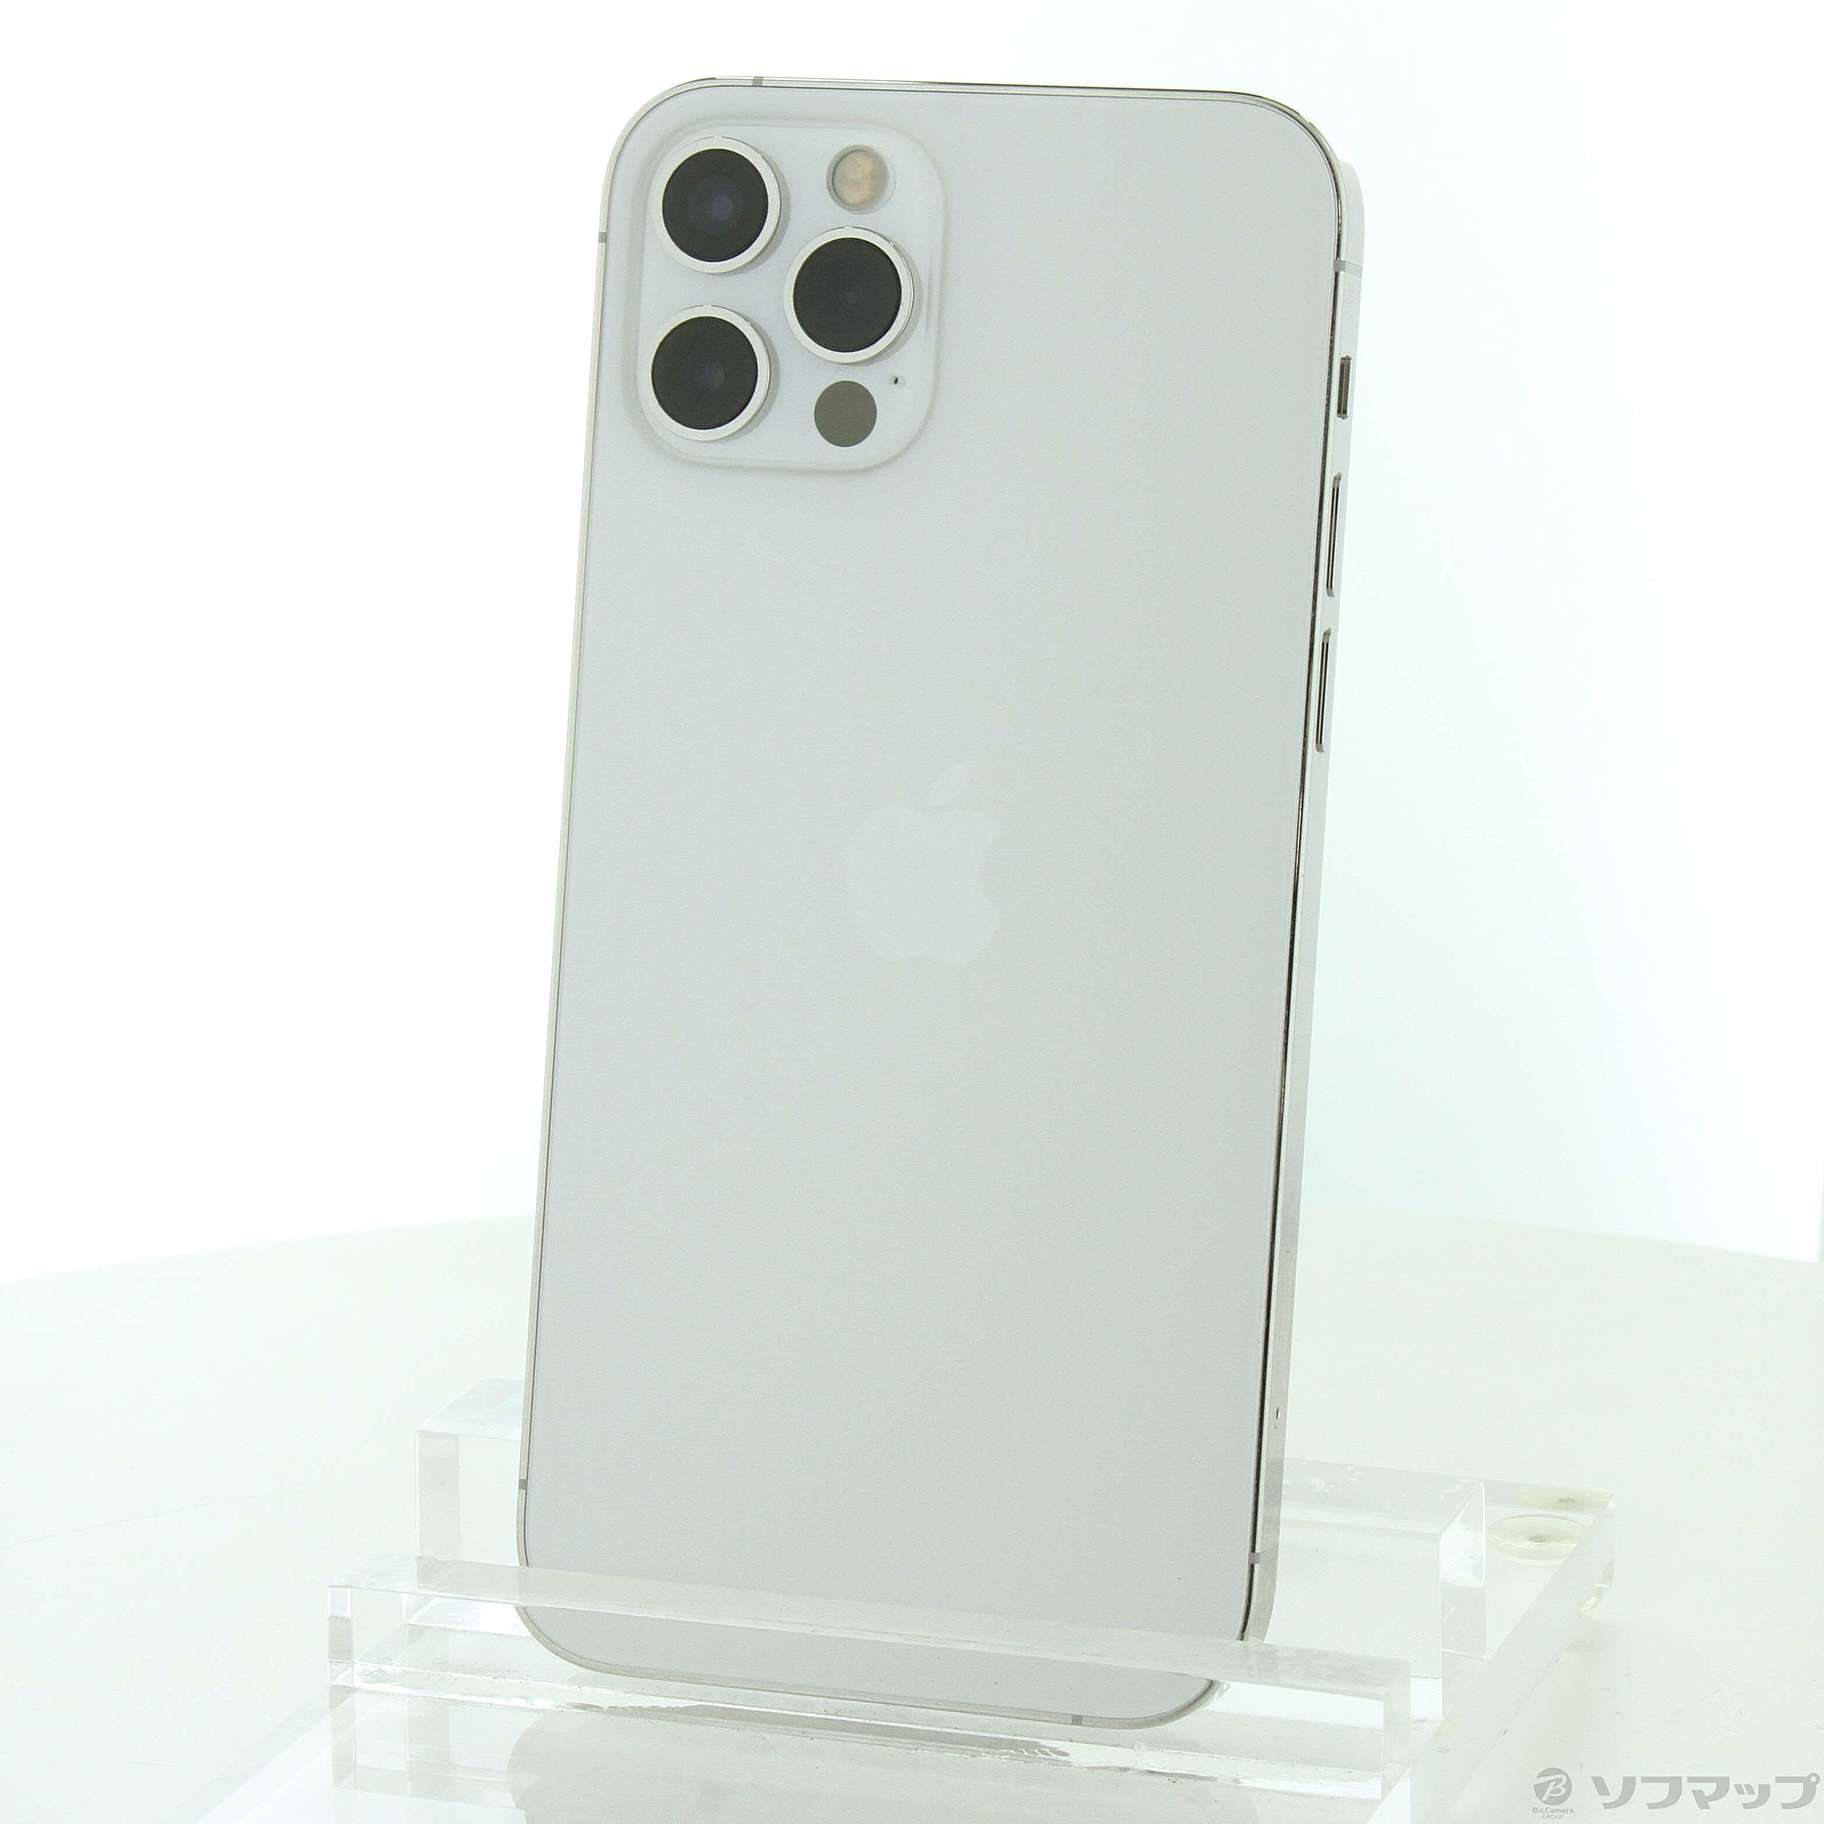 販売取扱店 【チョコさん専用】iPhone 12 Pro Max シルバー 256 GB 